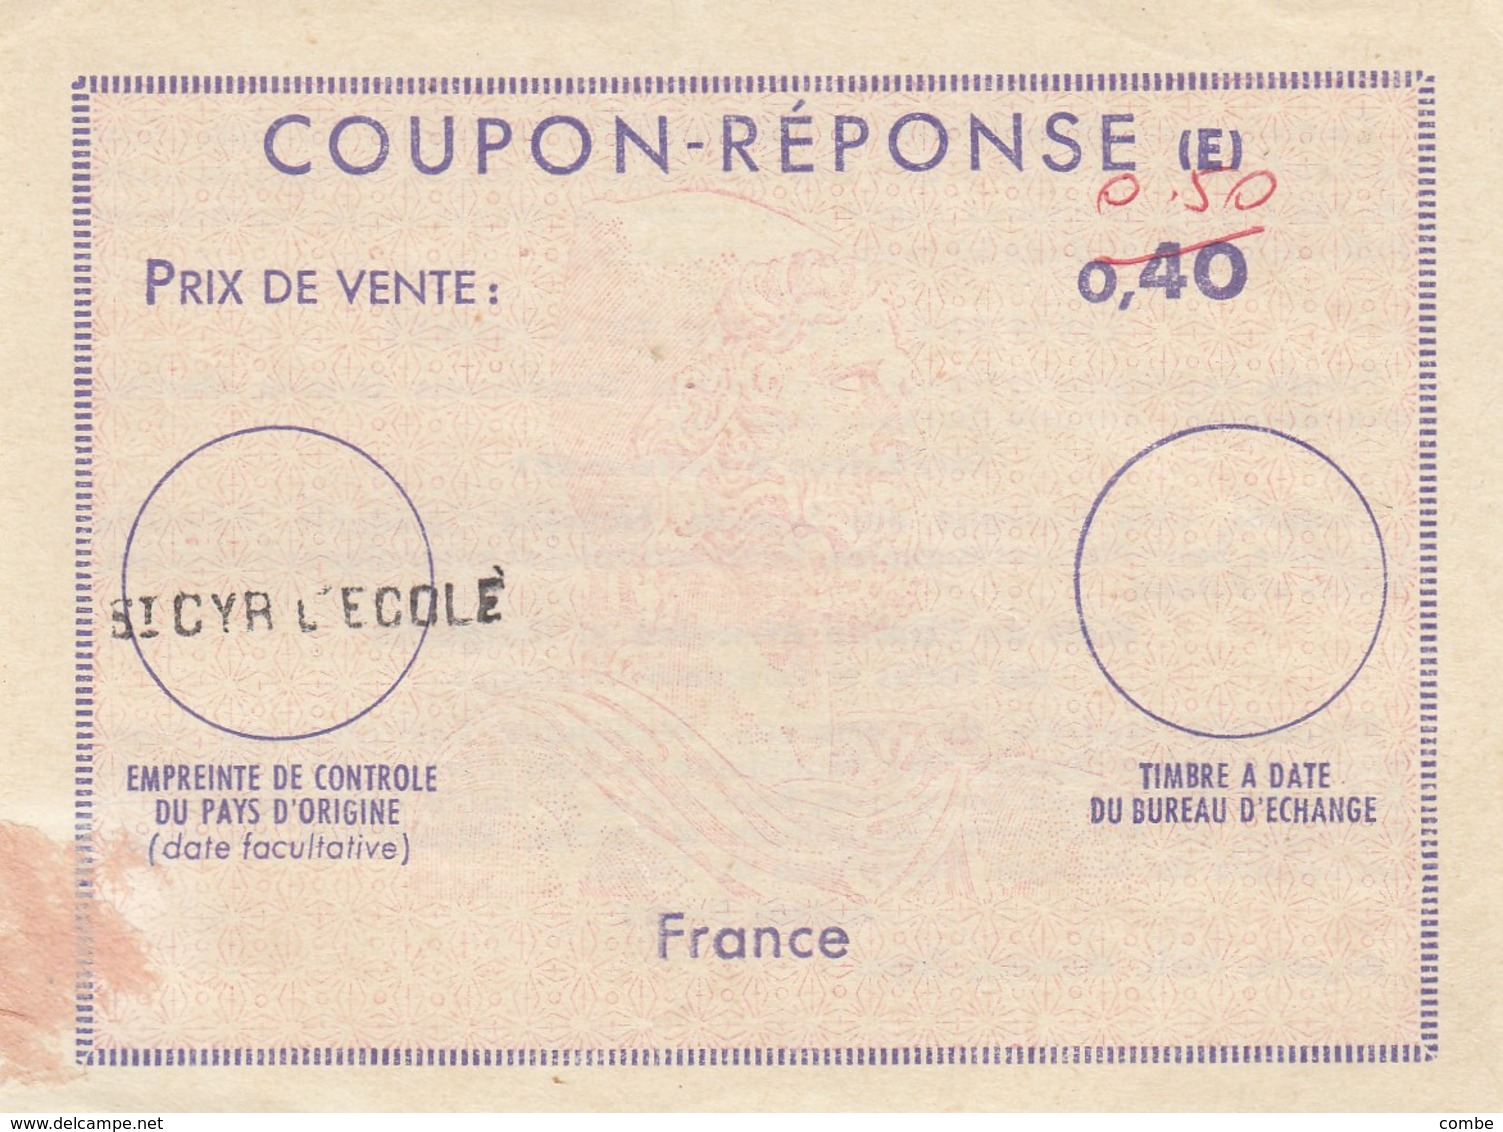 COUPON-REPONSE INTERNATIONAL. E. FRANCE. 0,40 FRANC RECTIFIE 0,50 FRANC . ST CYR-L'ECOLE      / 2 - Coupons-réponse